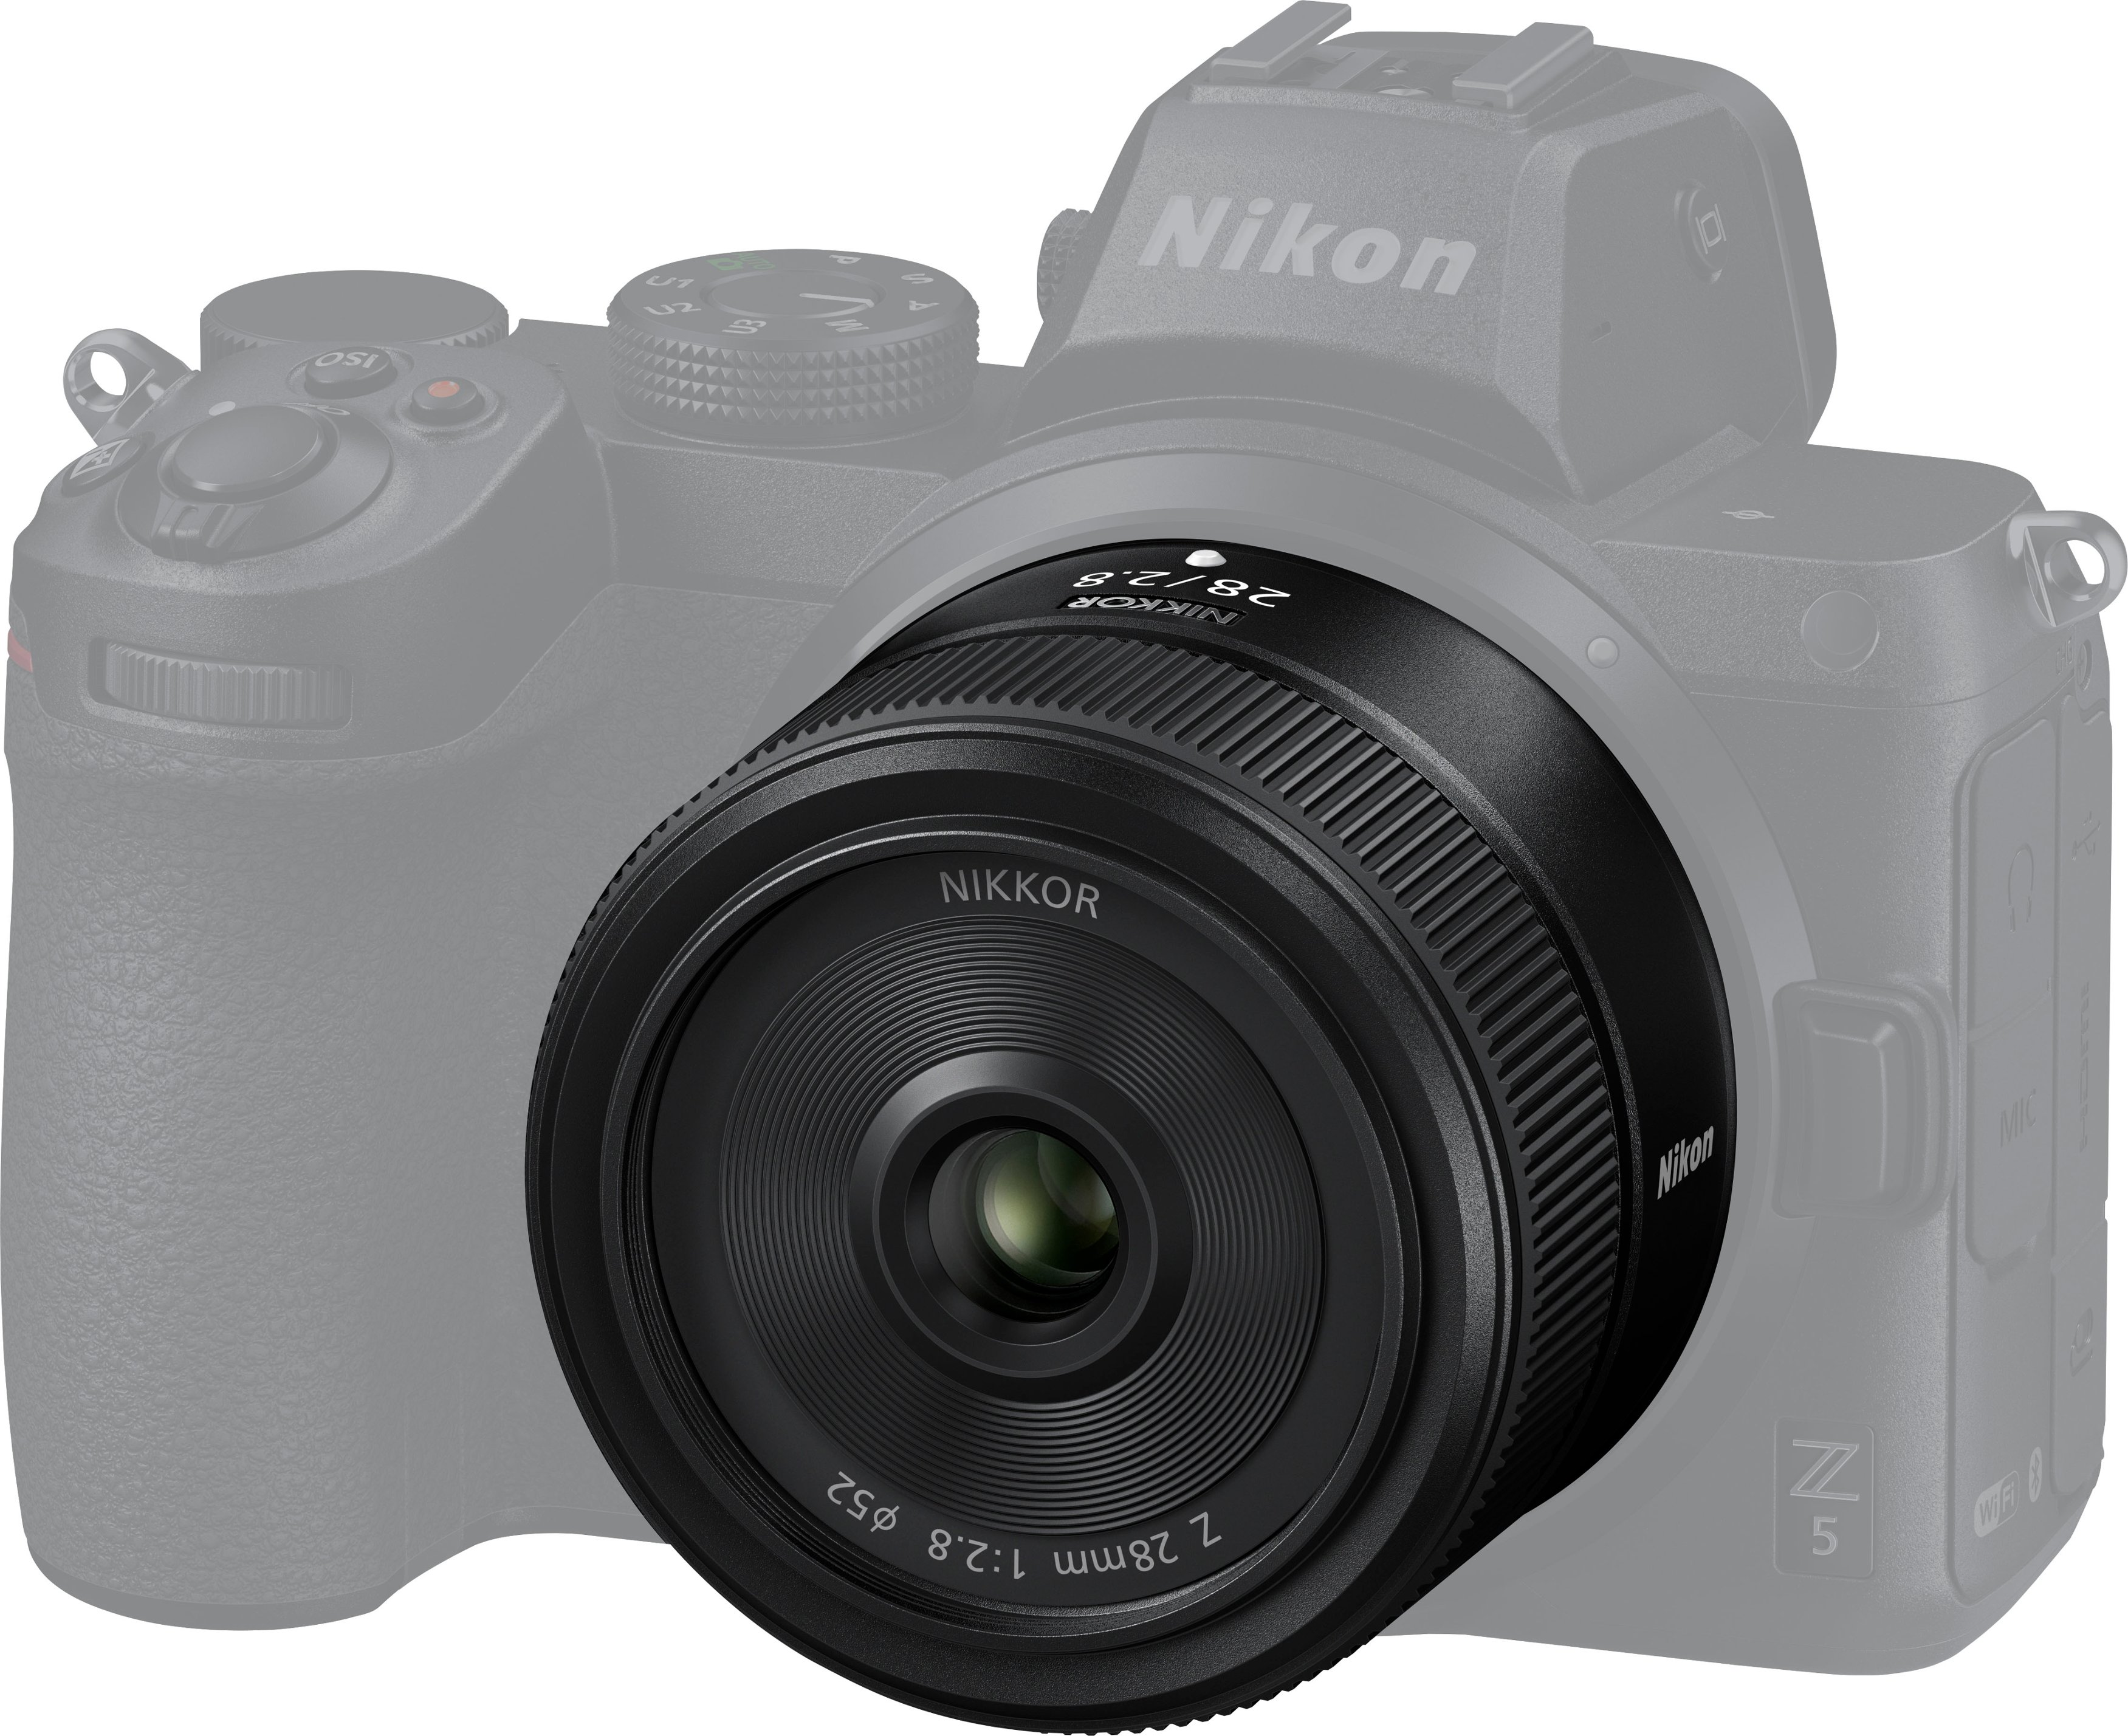 Angle View: NIKKOR Z 28mm f/2.8 Standard Prime Lens for Nikon Z Cameras - Black